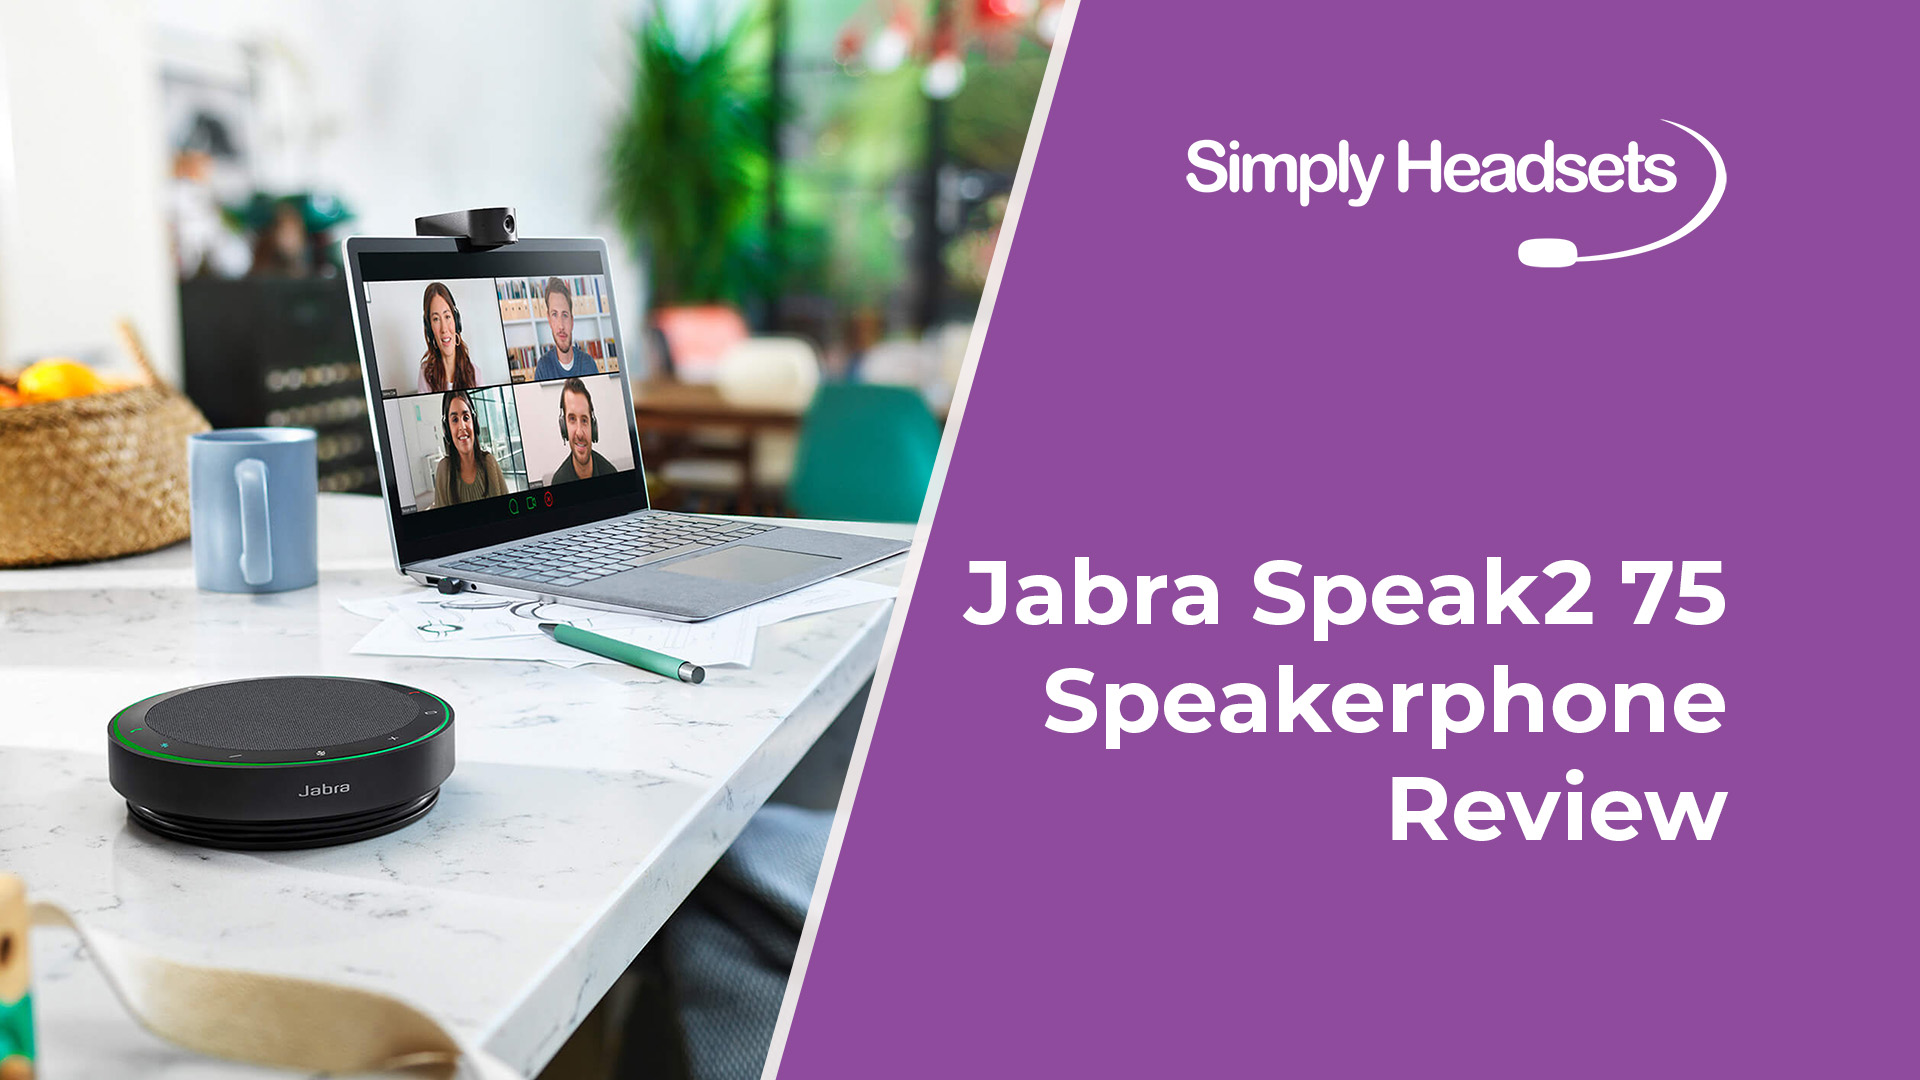 75 Jabra Headsets Simply Review Speakerphone | Speak2